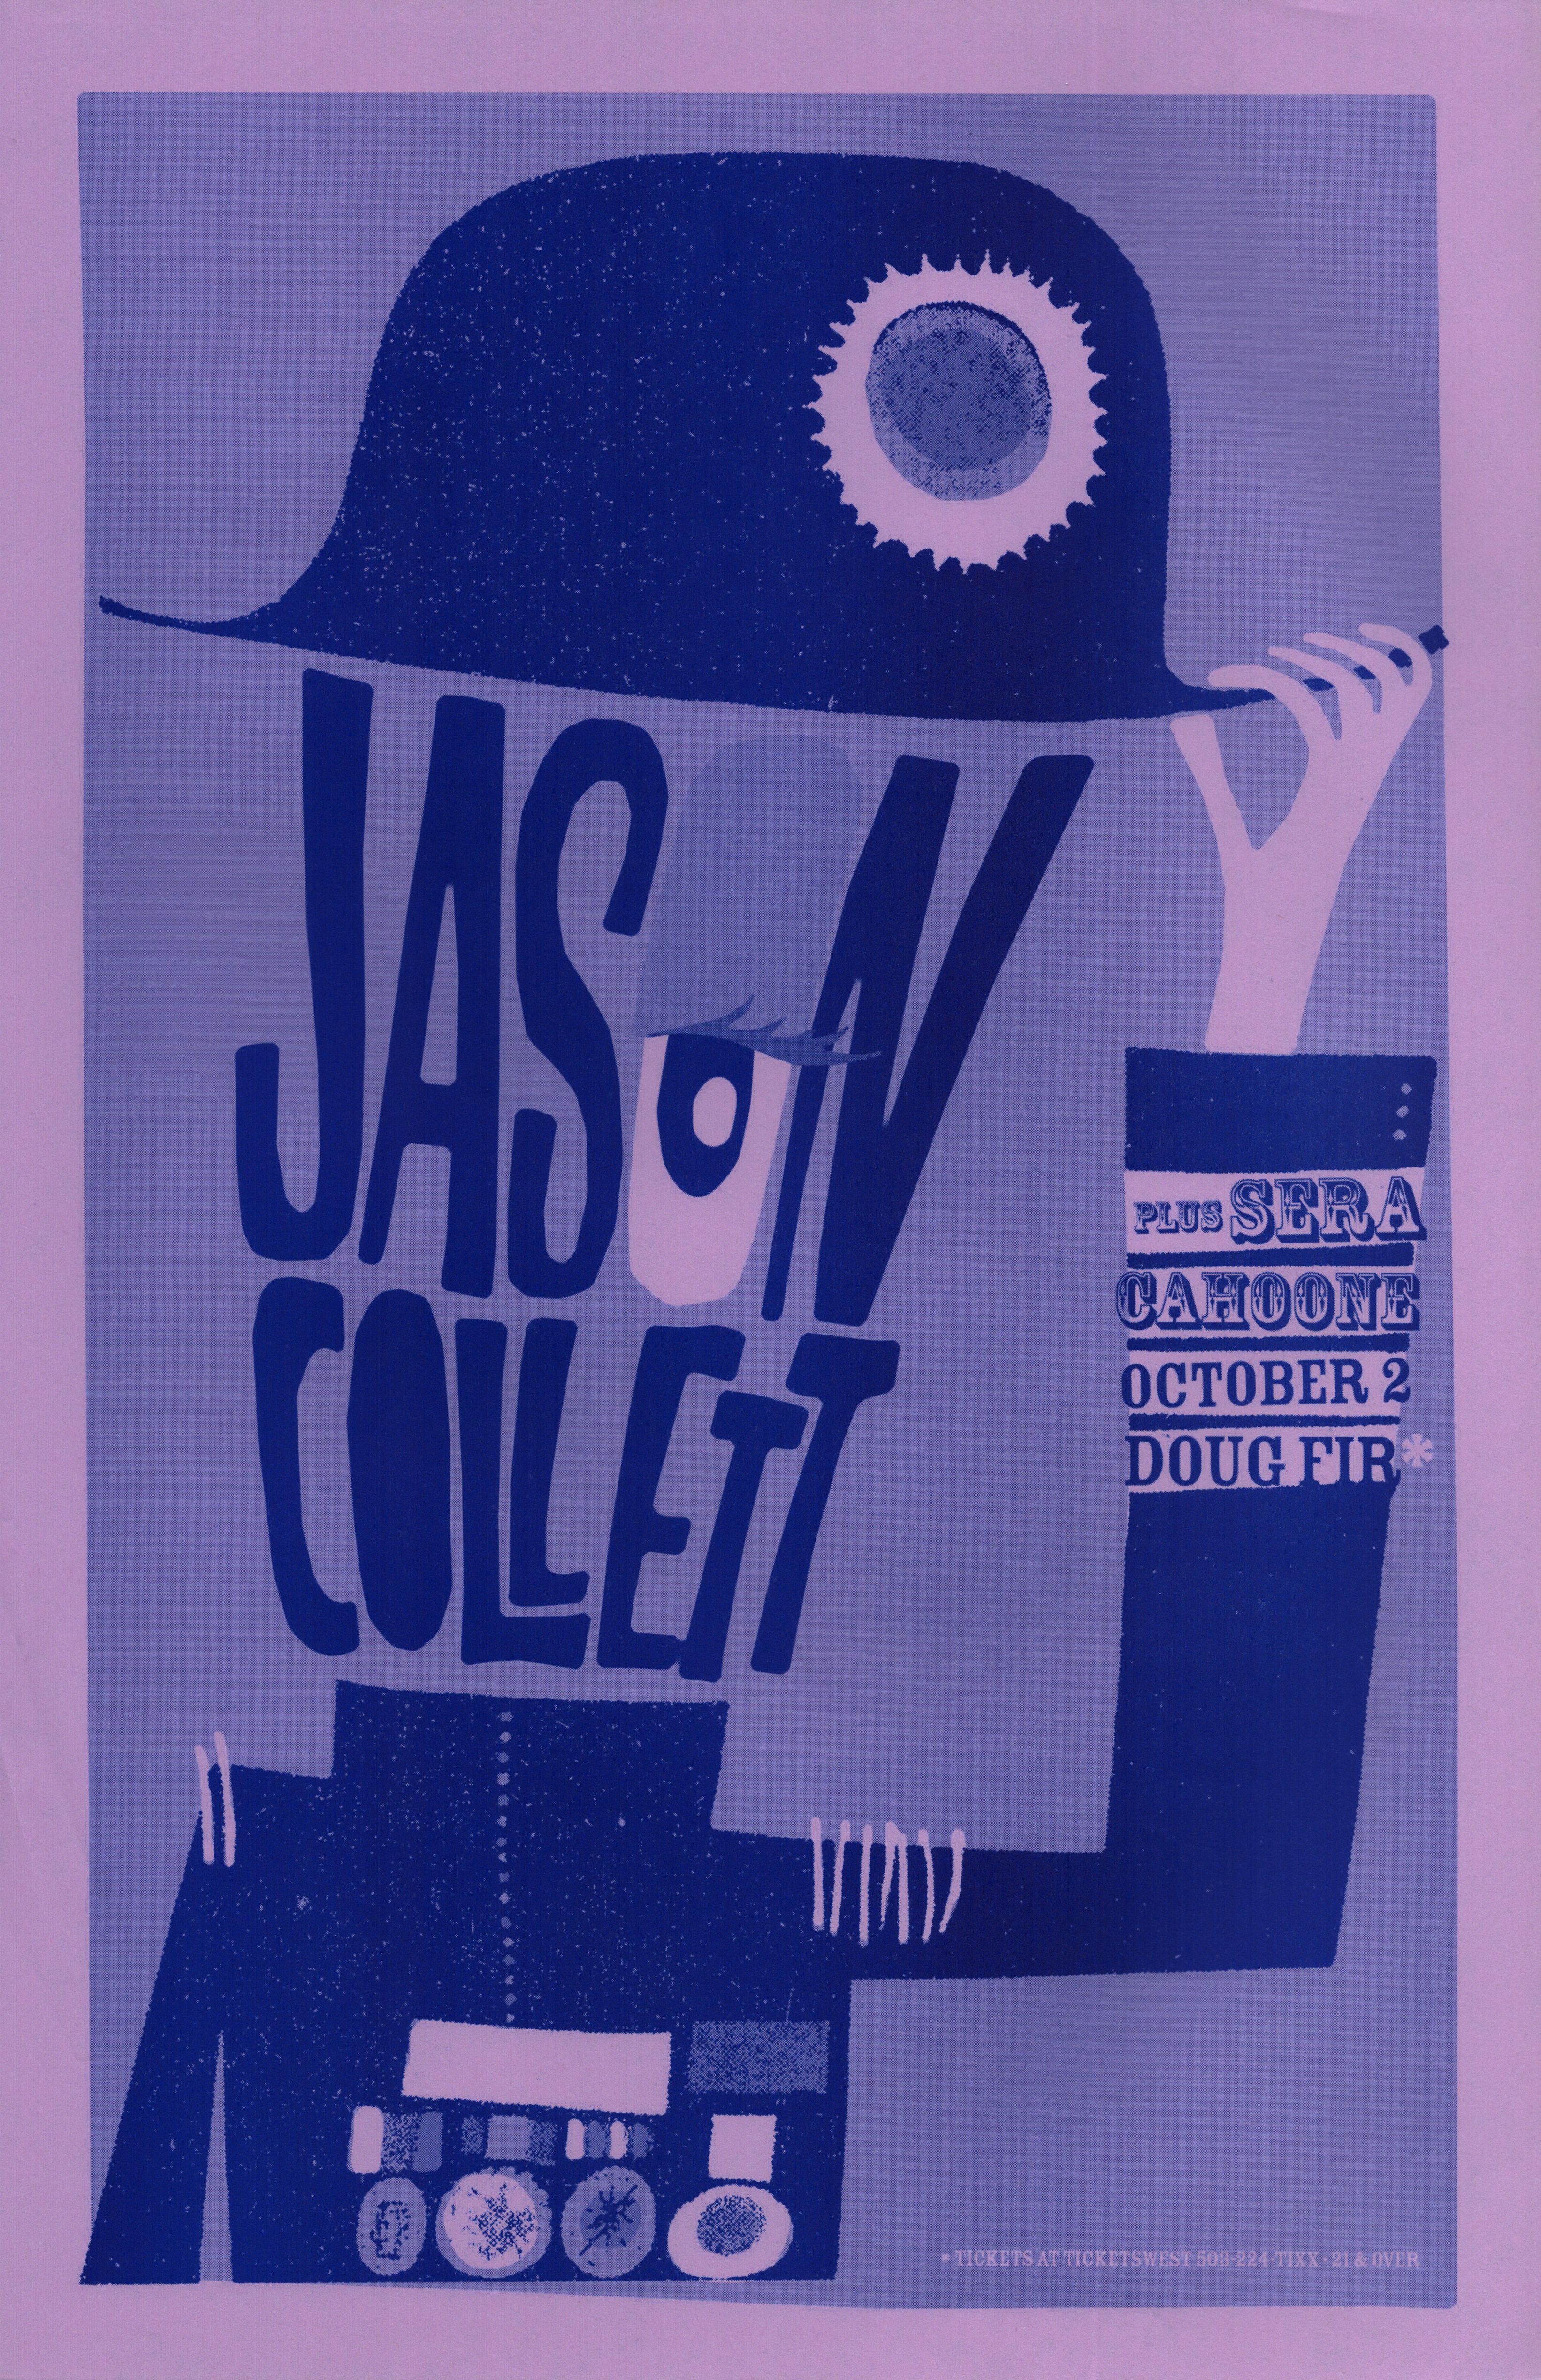 MXP-143.14 Jason Collett Doug Fir 2006 Concert Poster